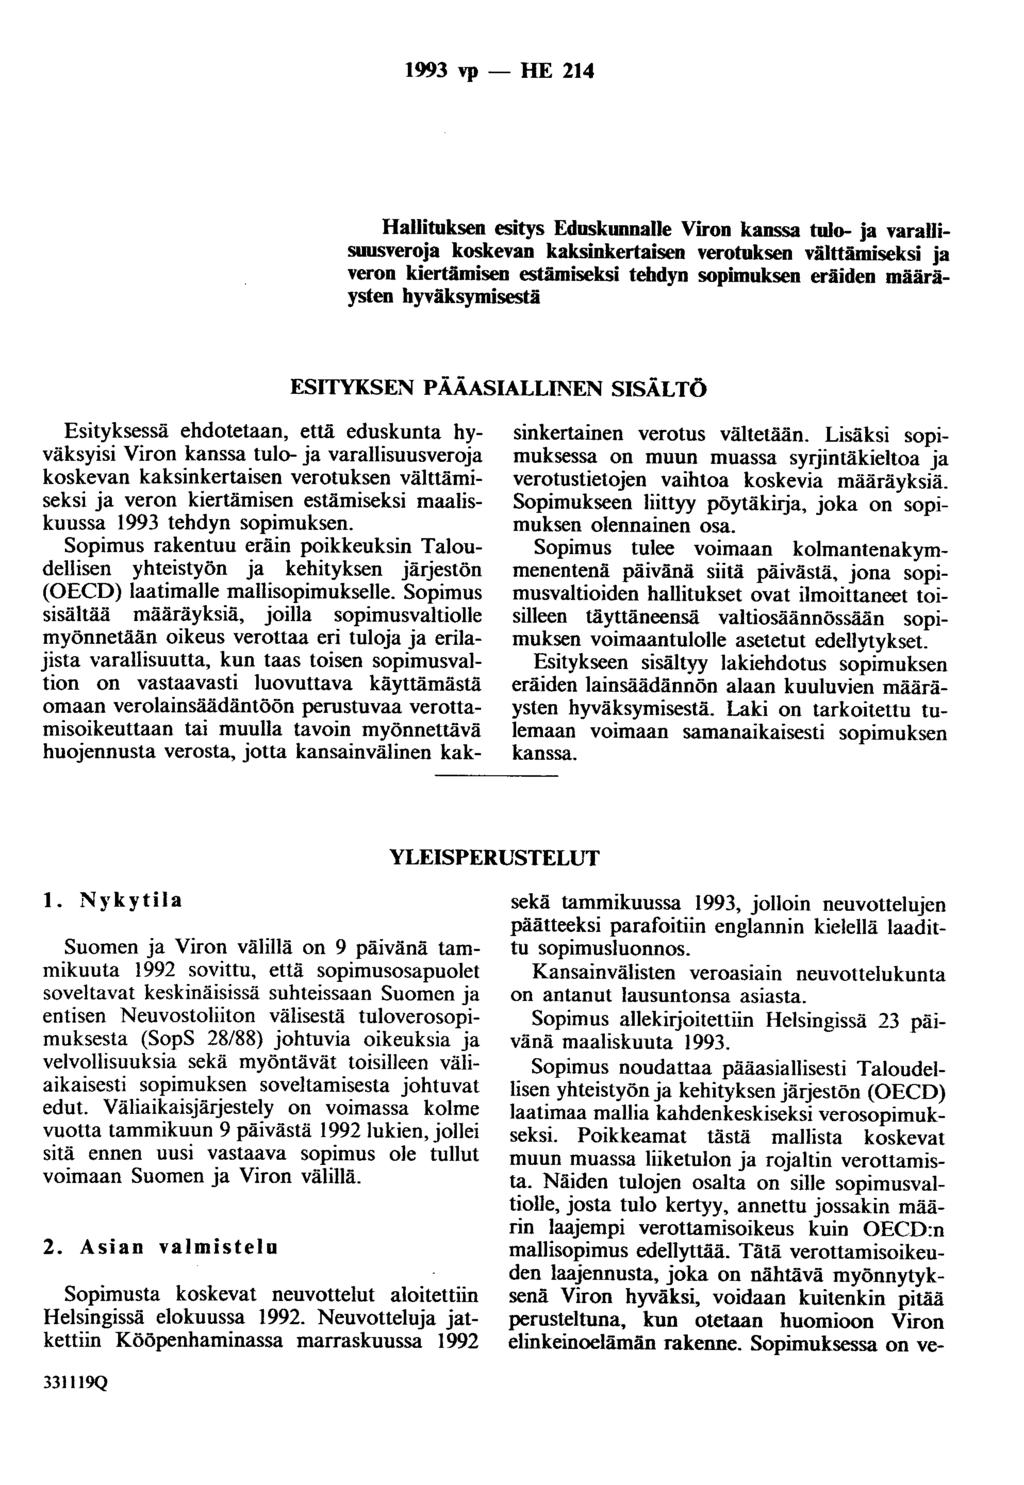 1993 vp - HE 214 Hallituksen esitys Eduskunnalle Viron kanssa tulo- ja varauisuusveroja koskevan kaksinkertaisen verotuksen välttämiseksi ja veron kiertämisen estämiseksi tehdyn sopimuksen eräiden